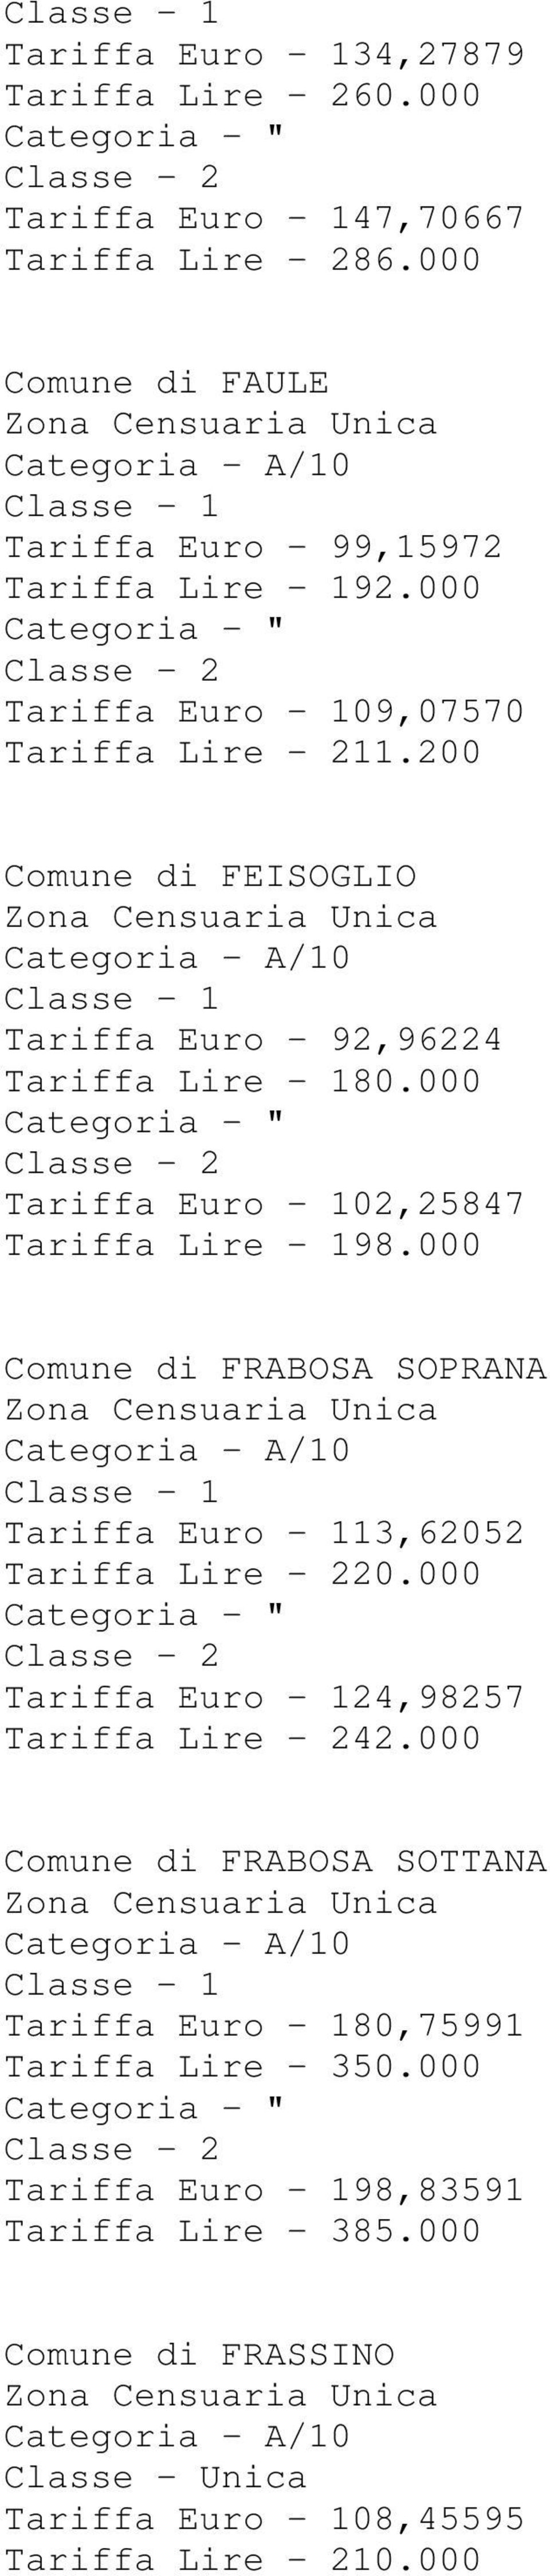 000 Tariffa Euro - 102,25847 Tariffa Lire - 198.000 Comune di FRABOSA SOPRANA Tariffa Euro - 113,62052 Tariffa Lire - 220.